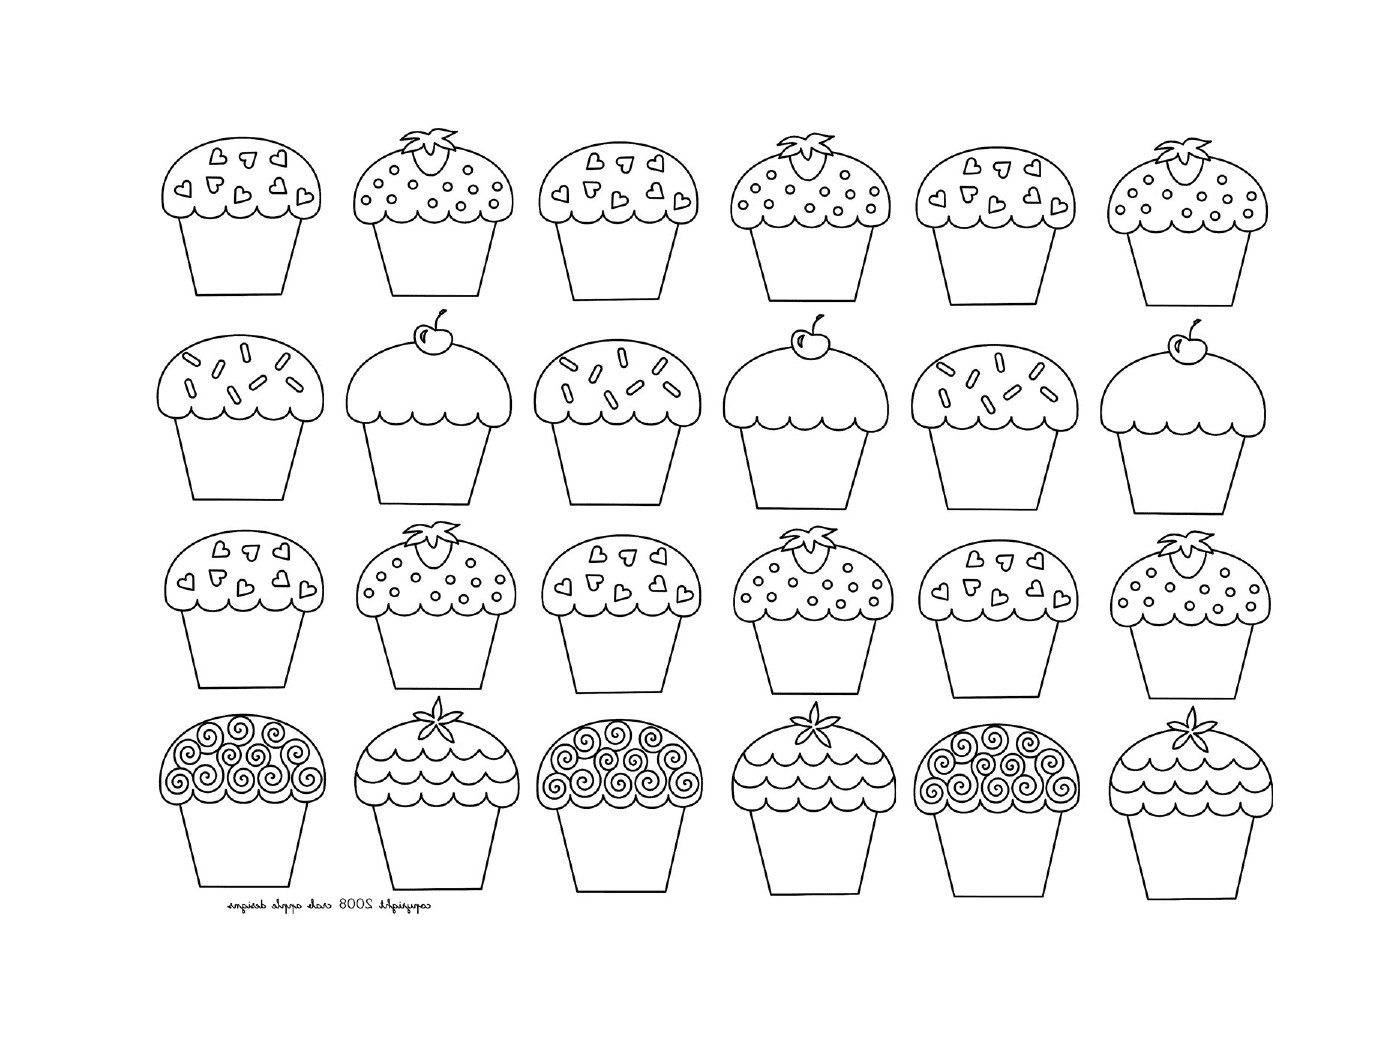  Ein Mosaik aus Kinder-Cupcakes, unterschiedlicher Art 